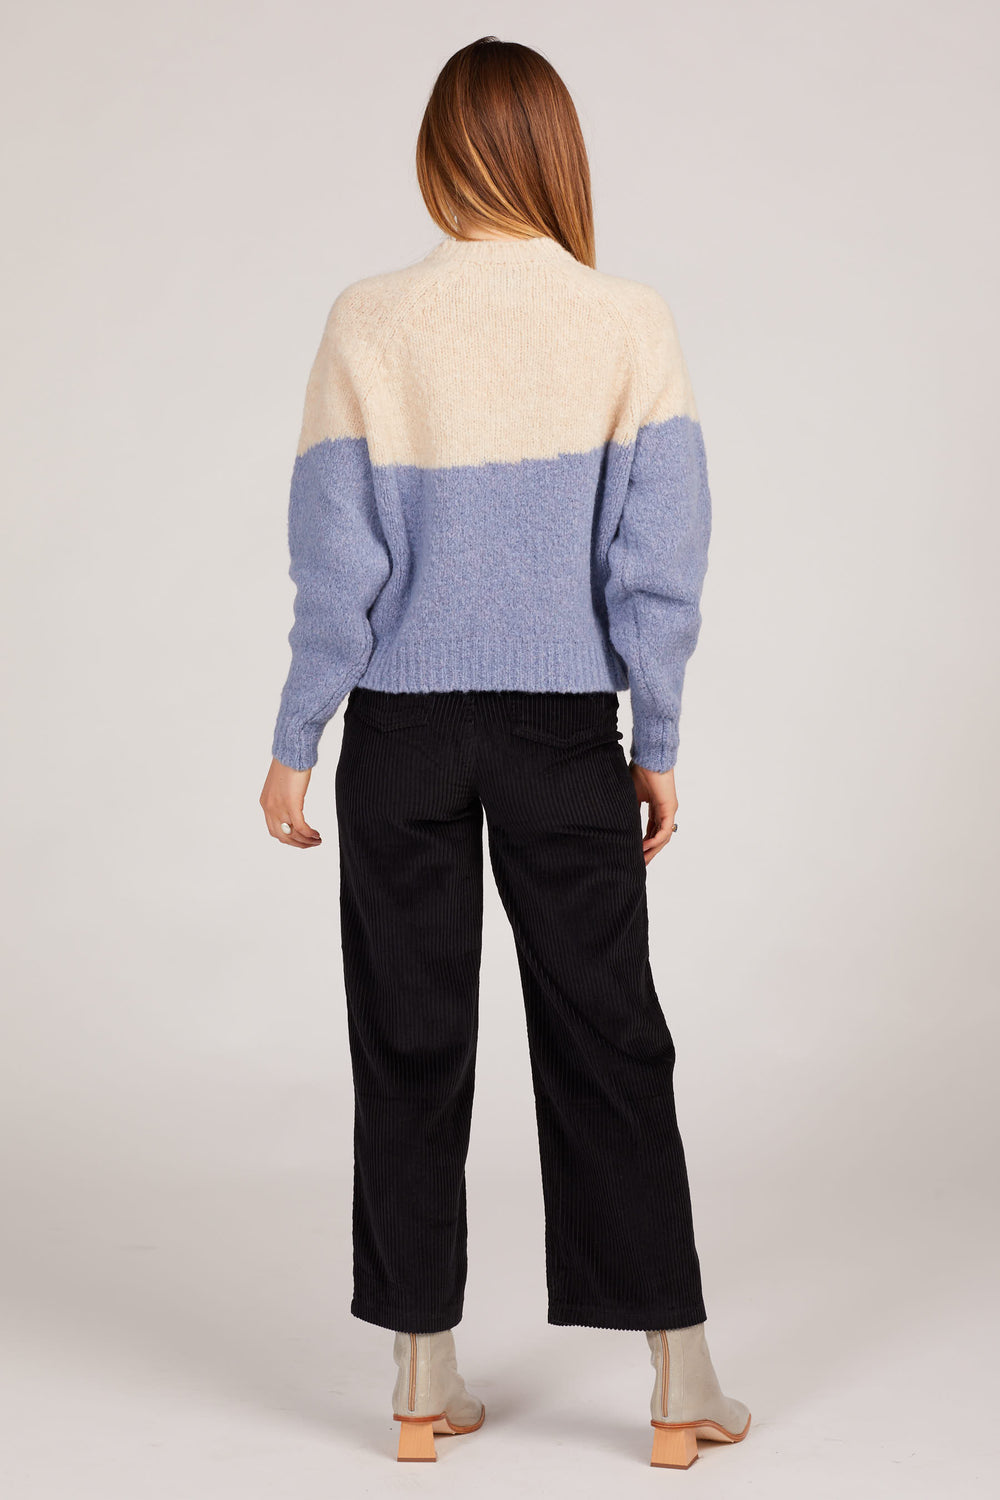 Sky Blue Yin Yang Sweater